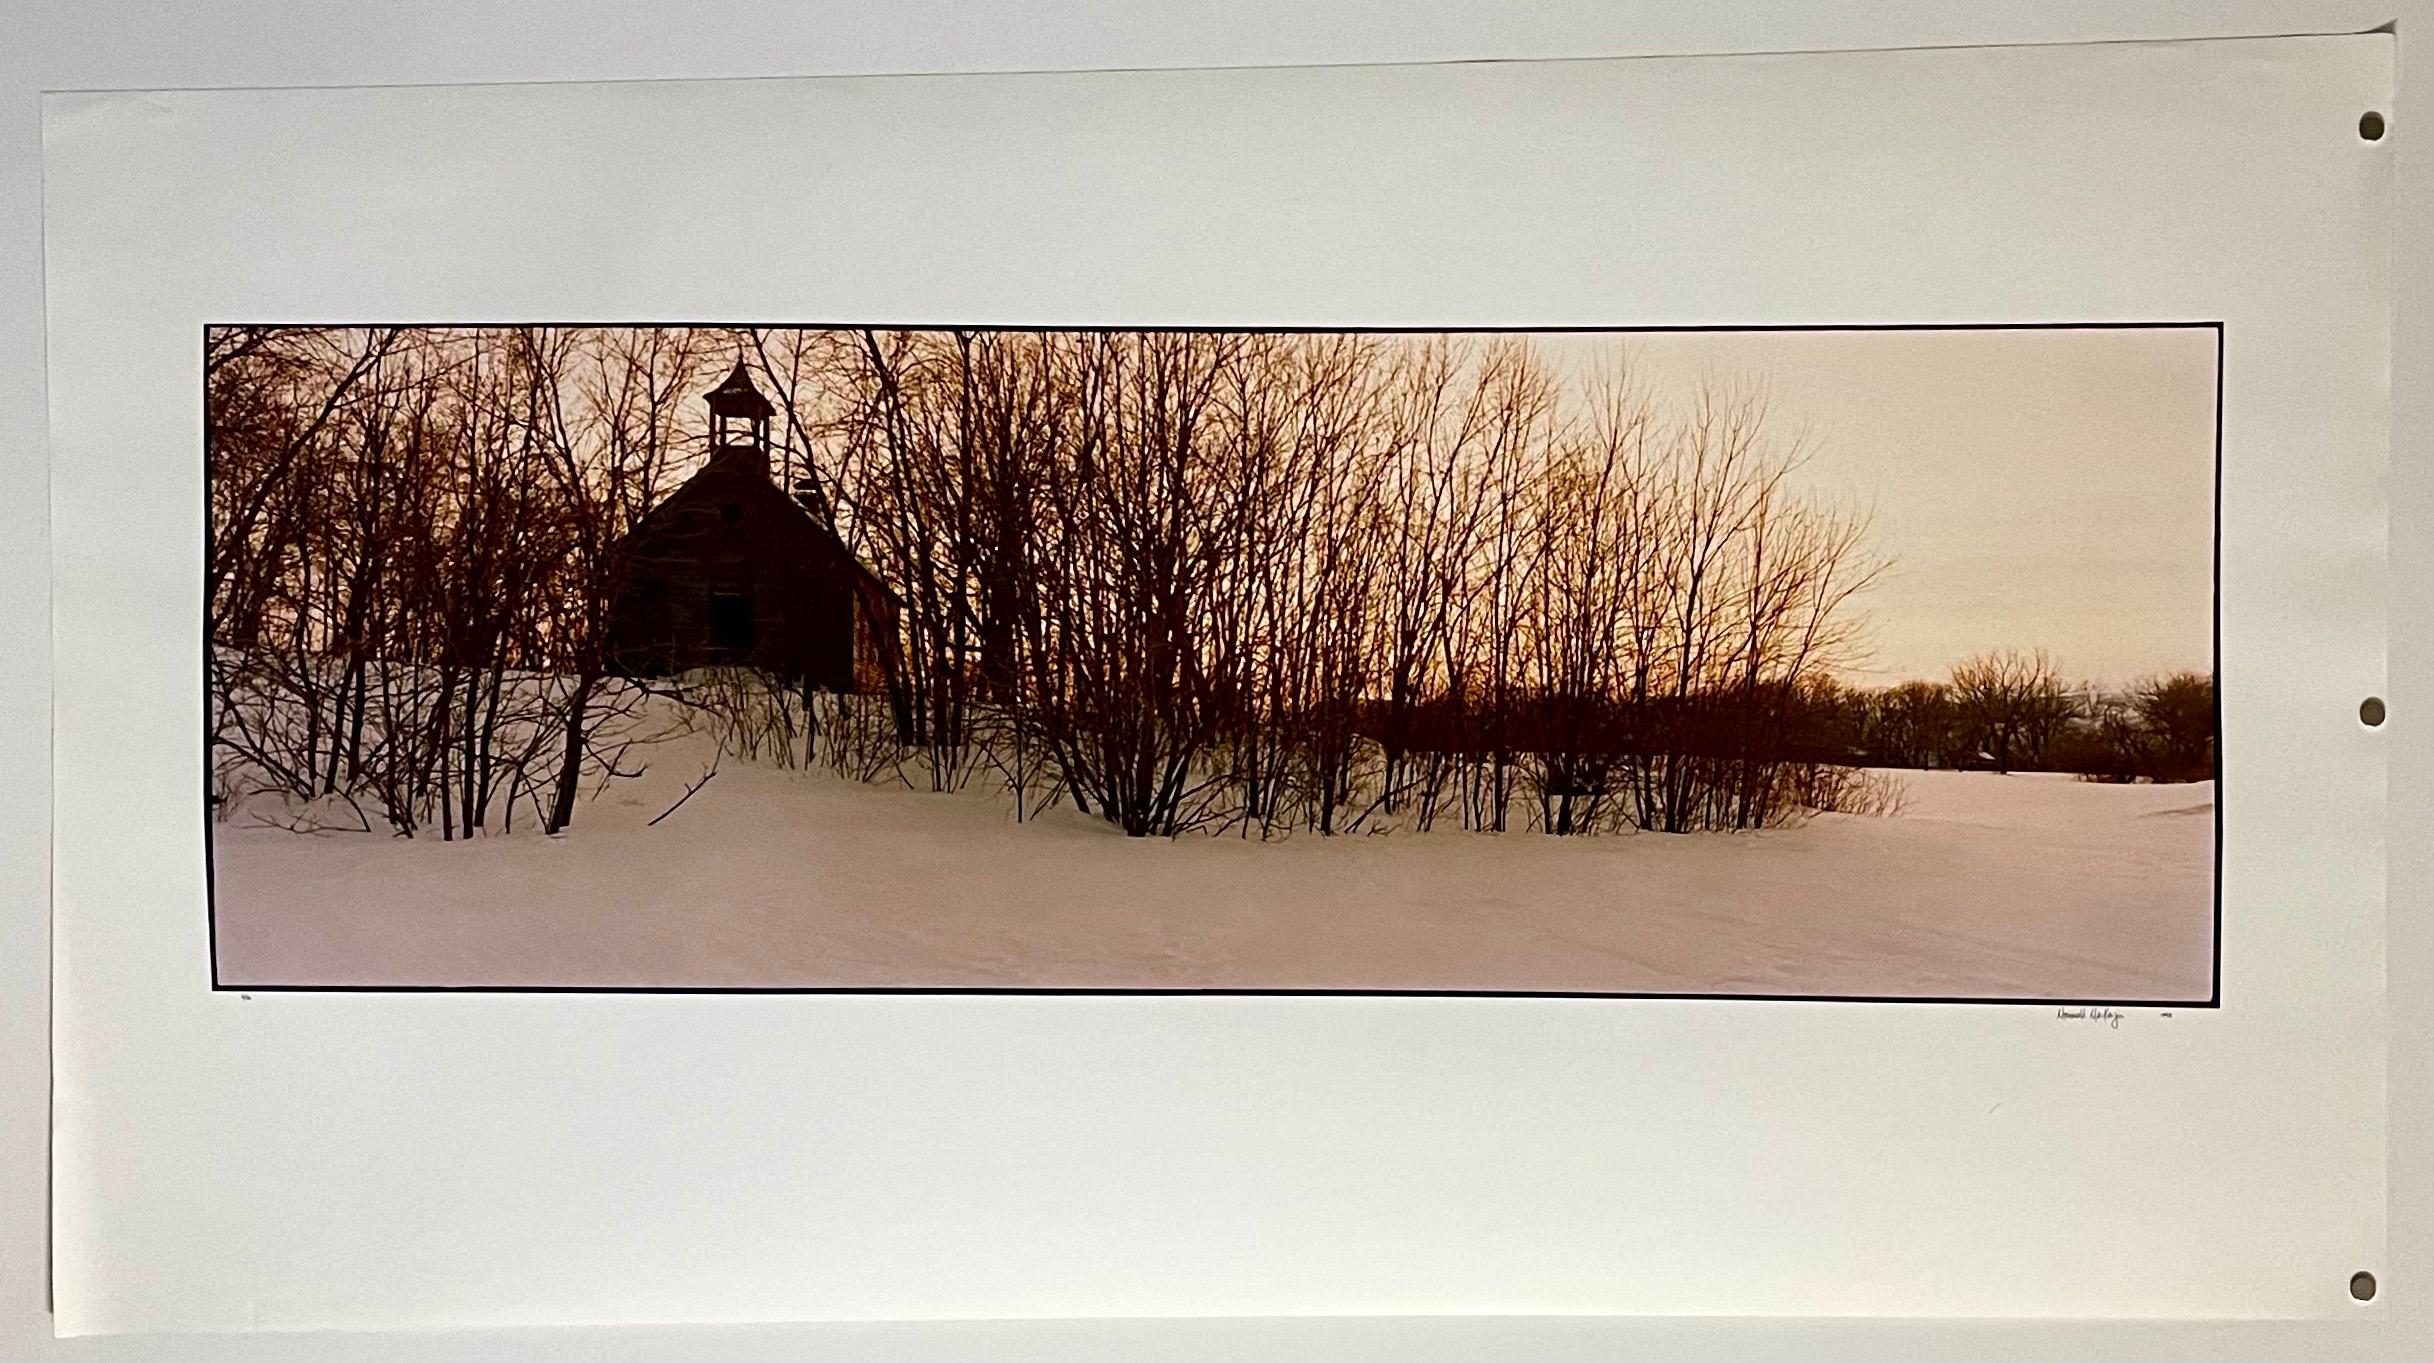 Architecture, paysage d'hiver, grande photographie en couleur Panoramie signée - Photograph de Maxwell Mackenzie